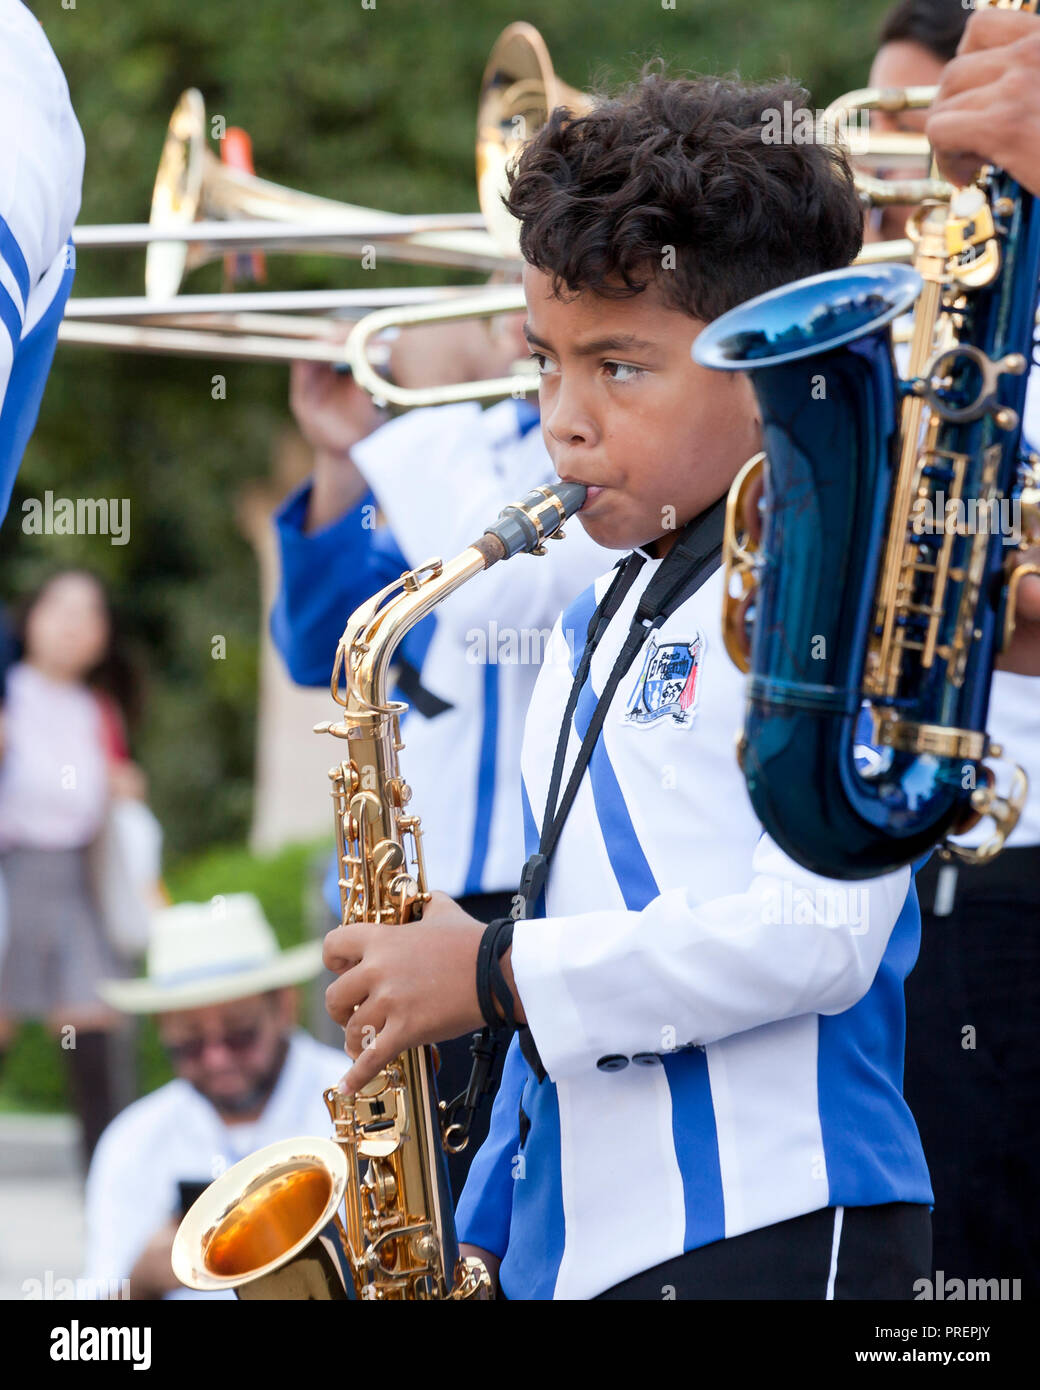 Preteen boy à jouer du saxophone dans une fanfare (sax player) - USA Banque D'Images